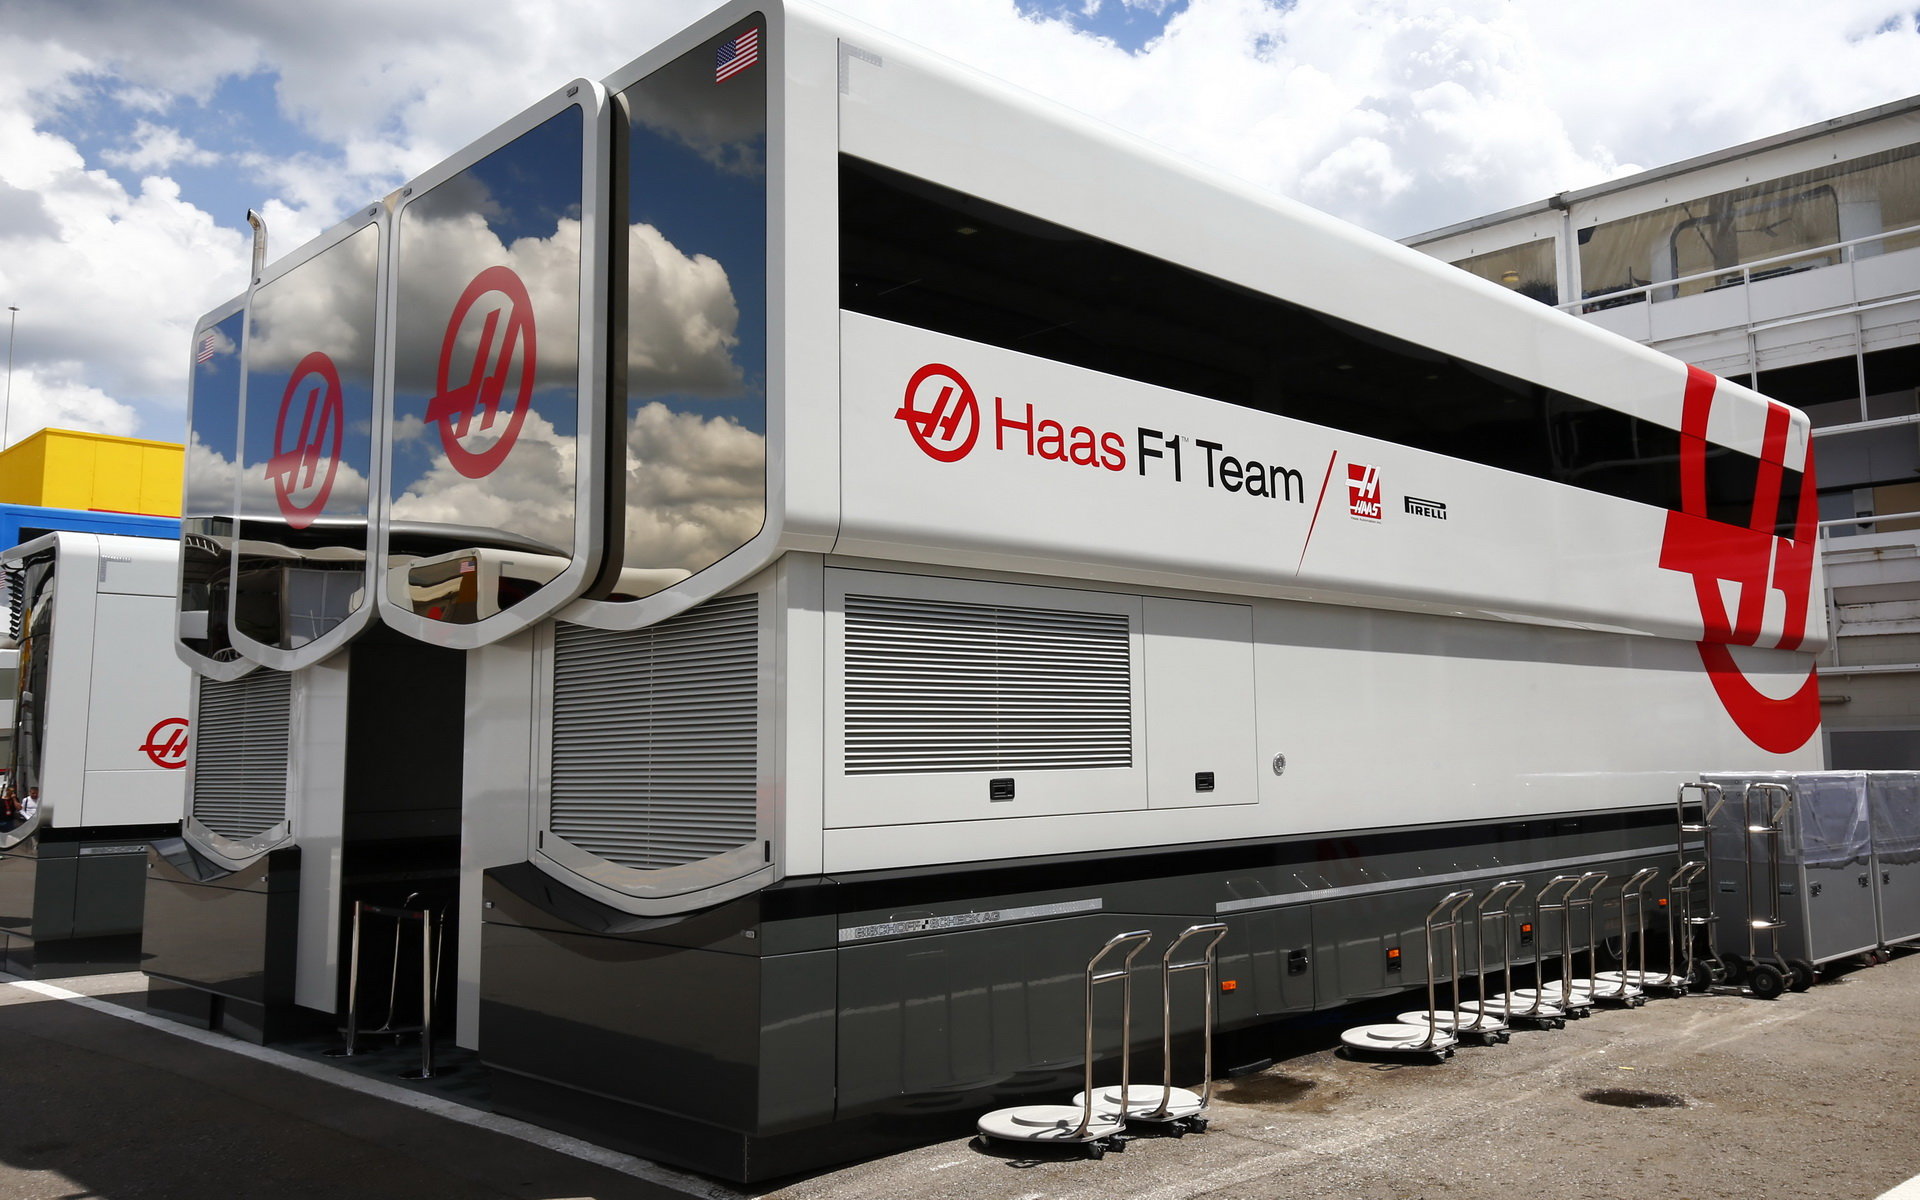 Motorhome týmu Haas v Barceloně